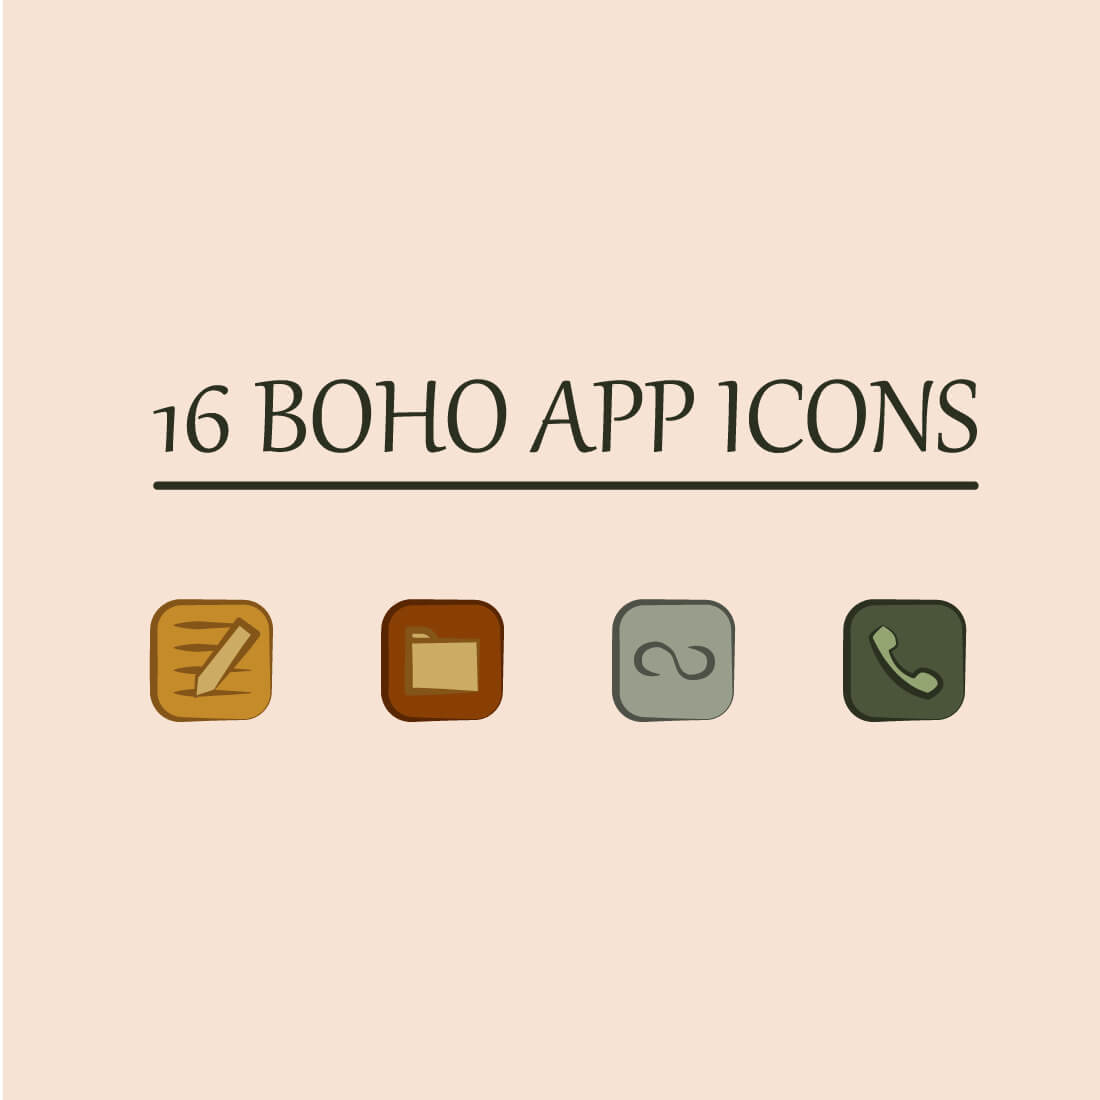 boho app icons 03